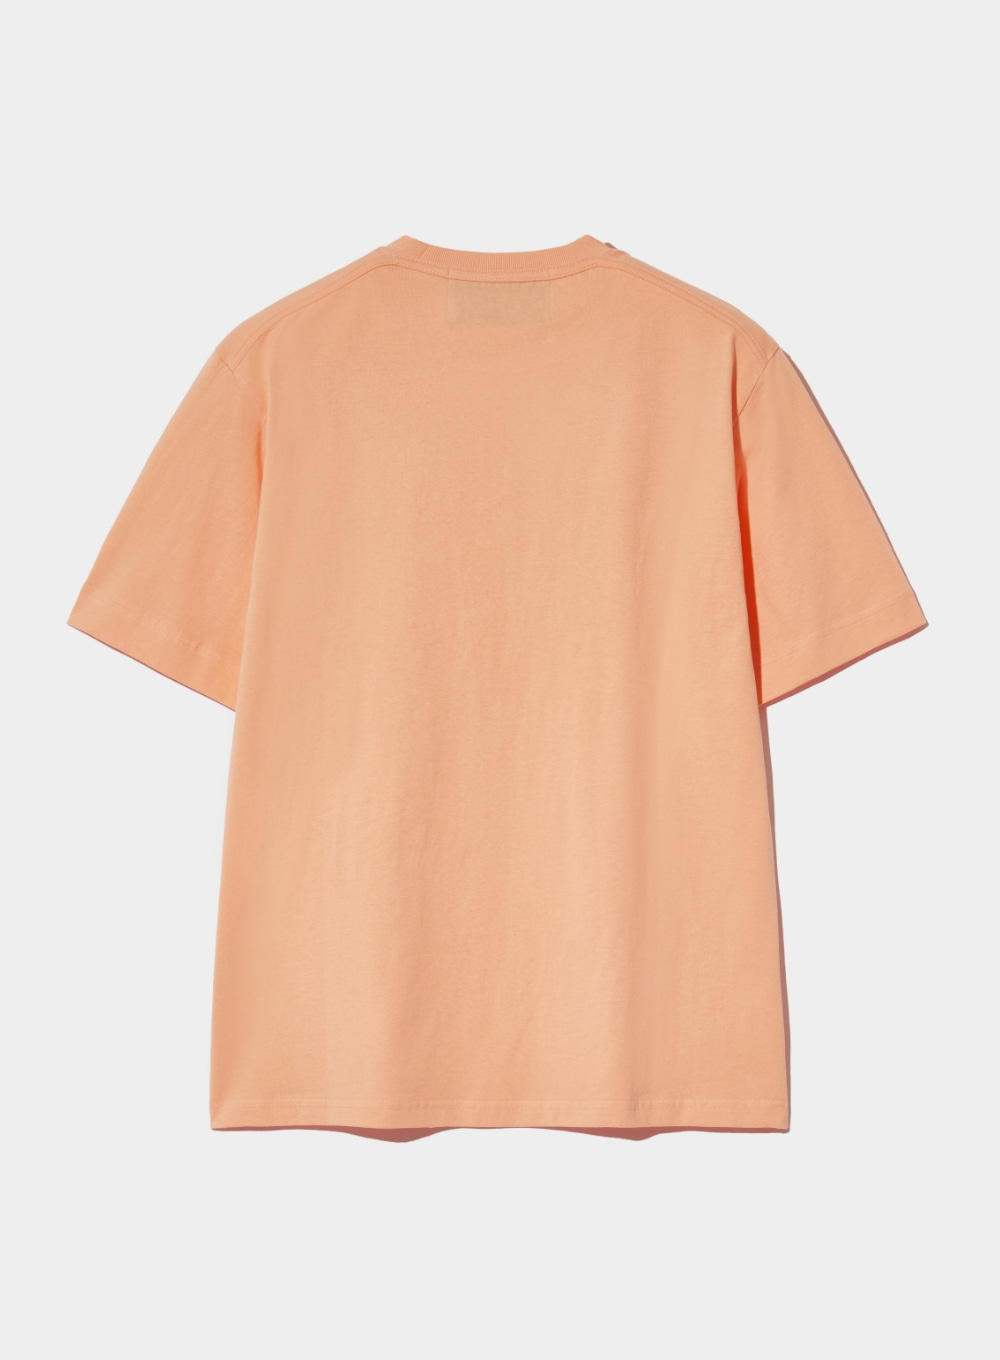 Sailing Graphic T-Shirt - Peach Coral